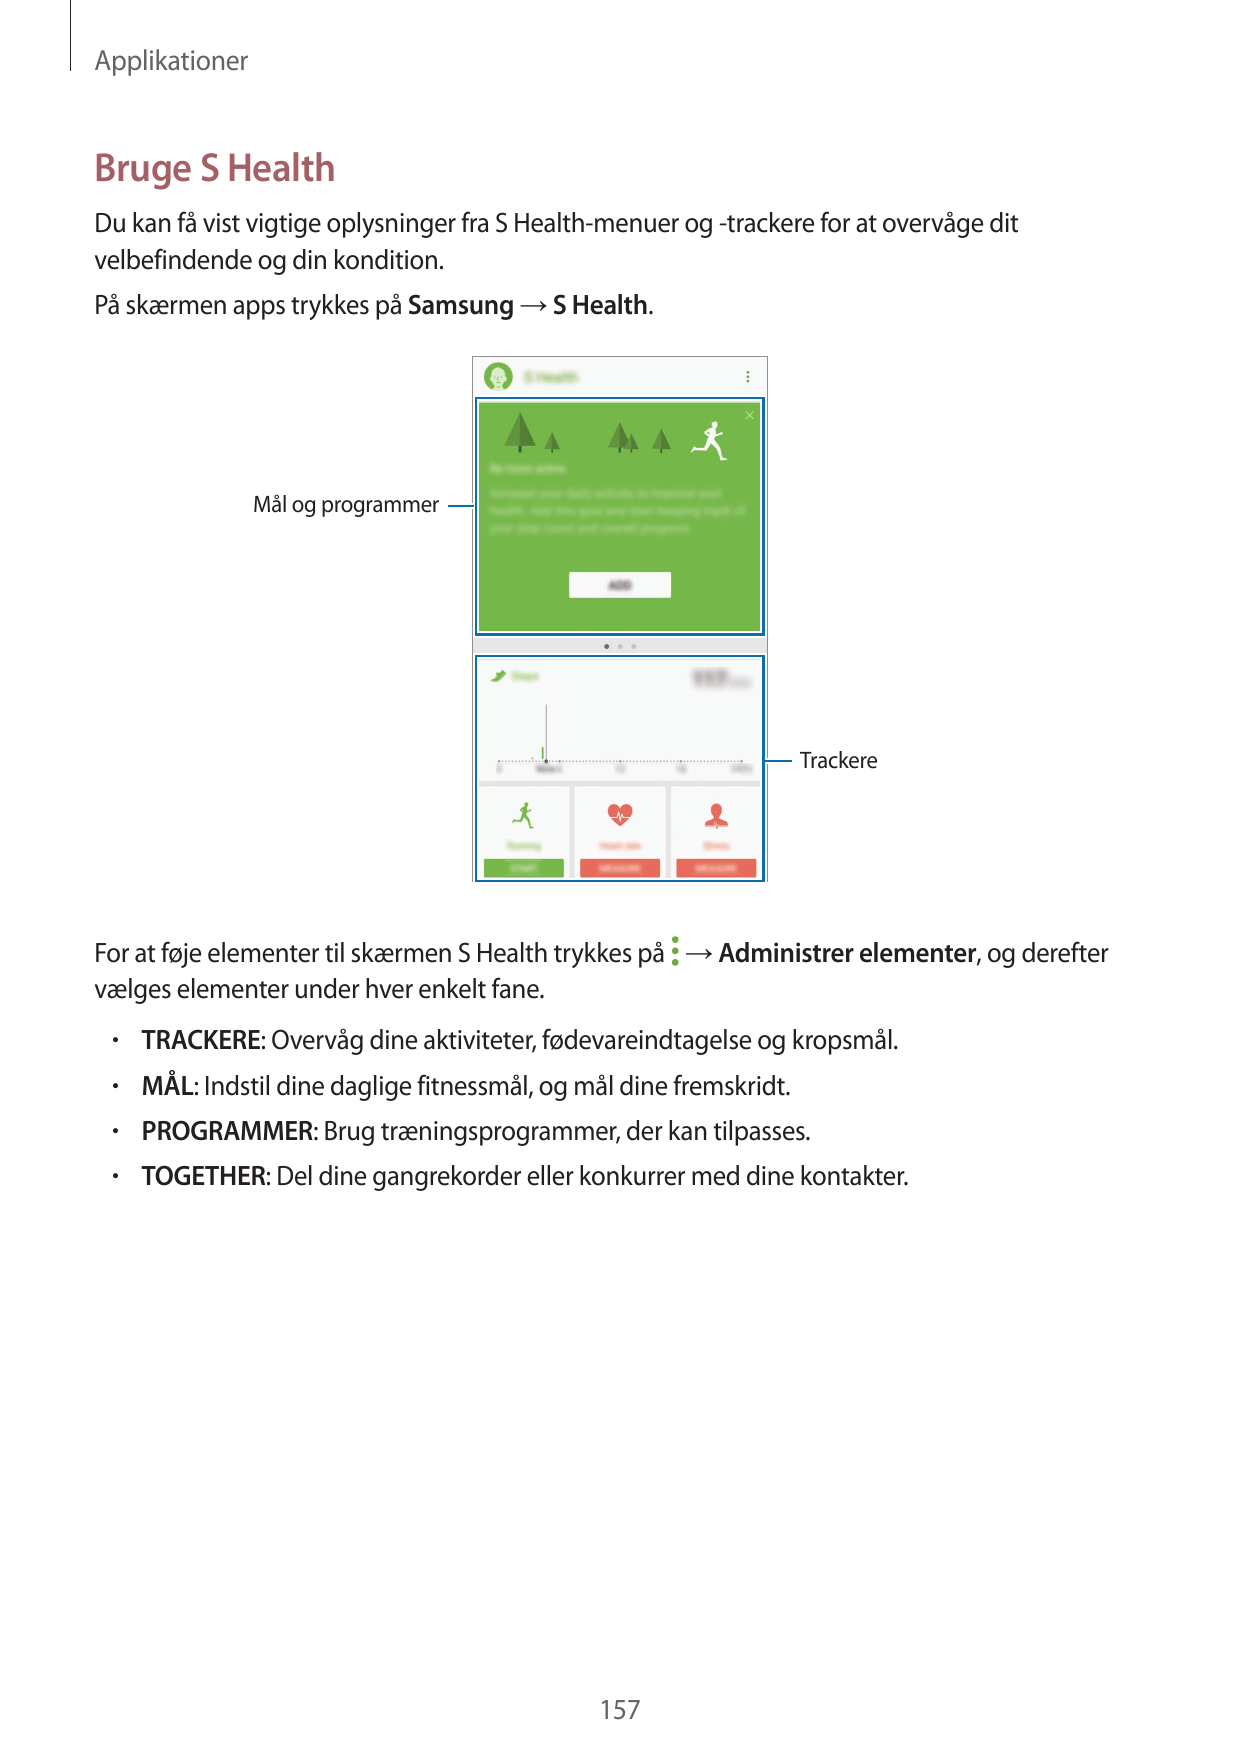 ApplikationerBruge S HealthDu kan få vist vigtige oplysninger fra S Health-menuer og -trackere for at overvåge ditvelbefindende 